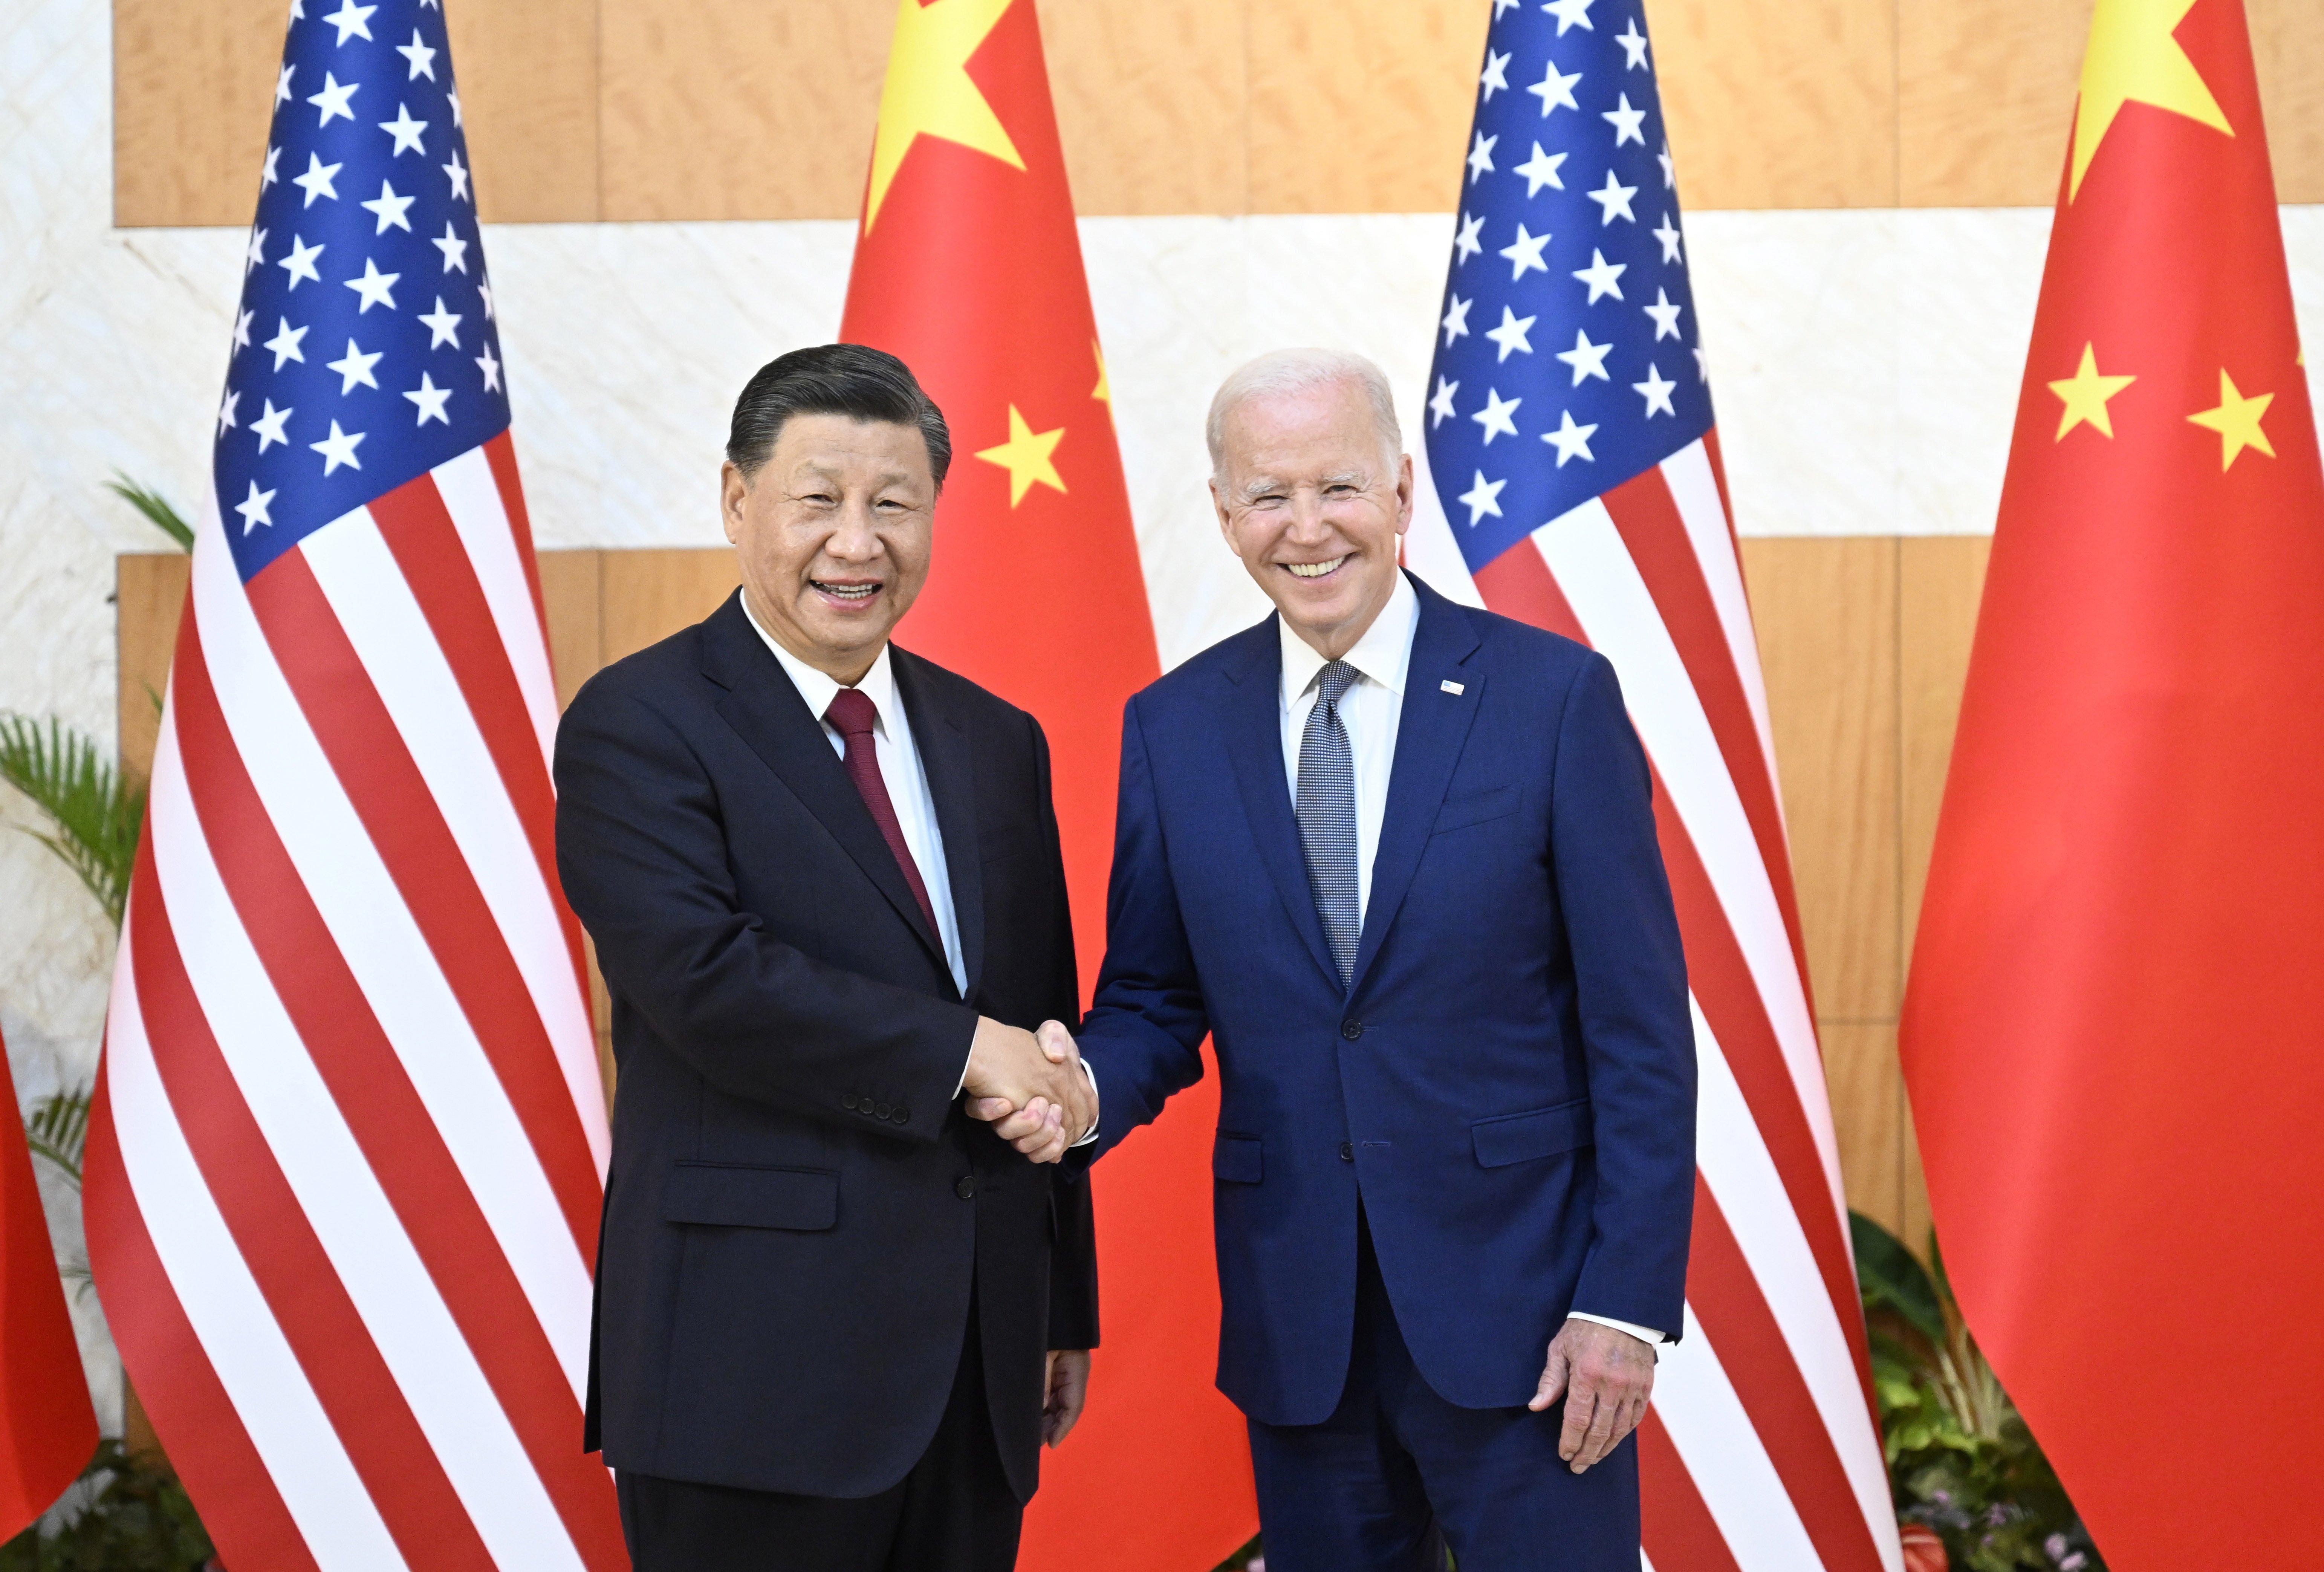 Primera trobada de Xi Jinping i Joe Biden: expressen la voluntat de treballar conjuntament